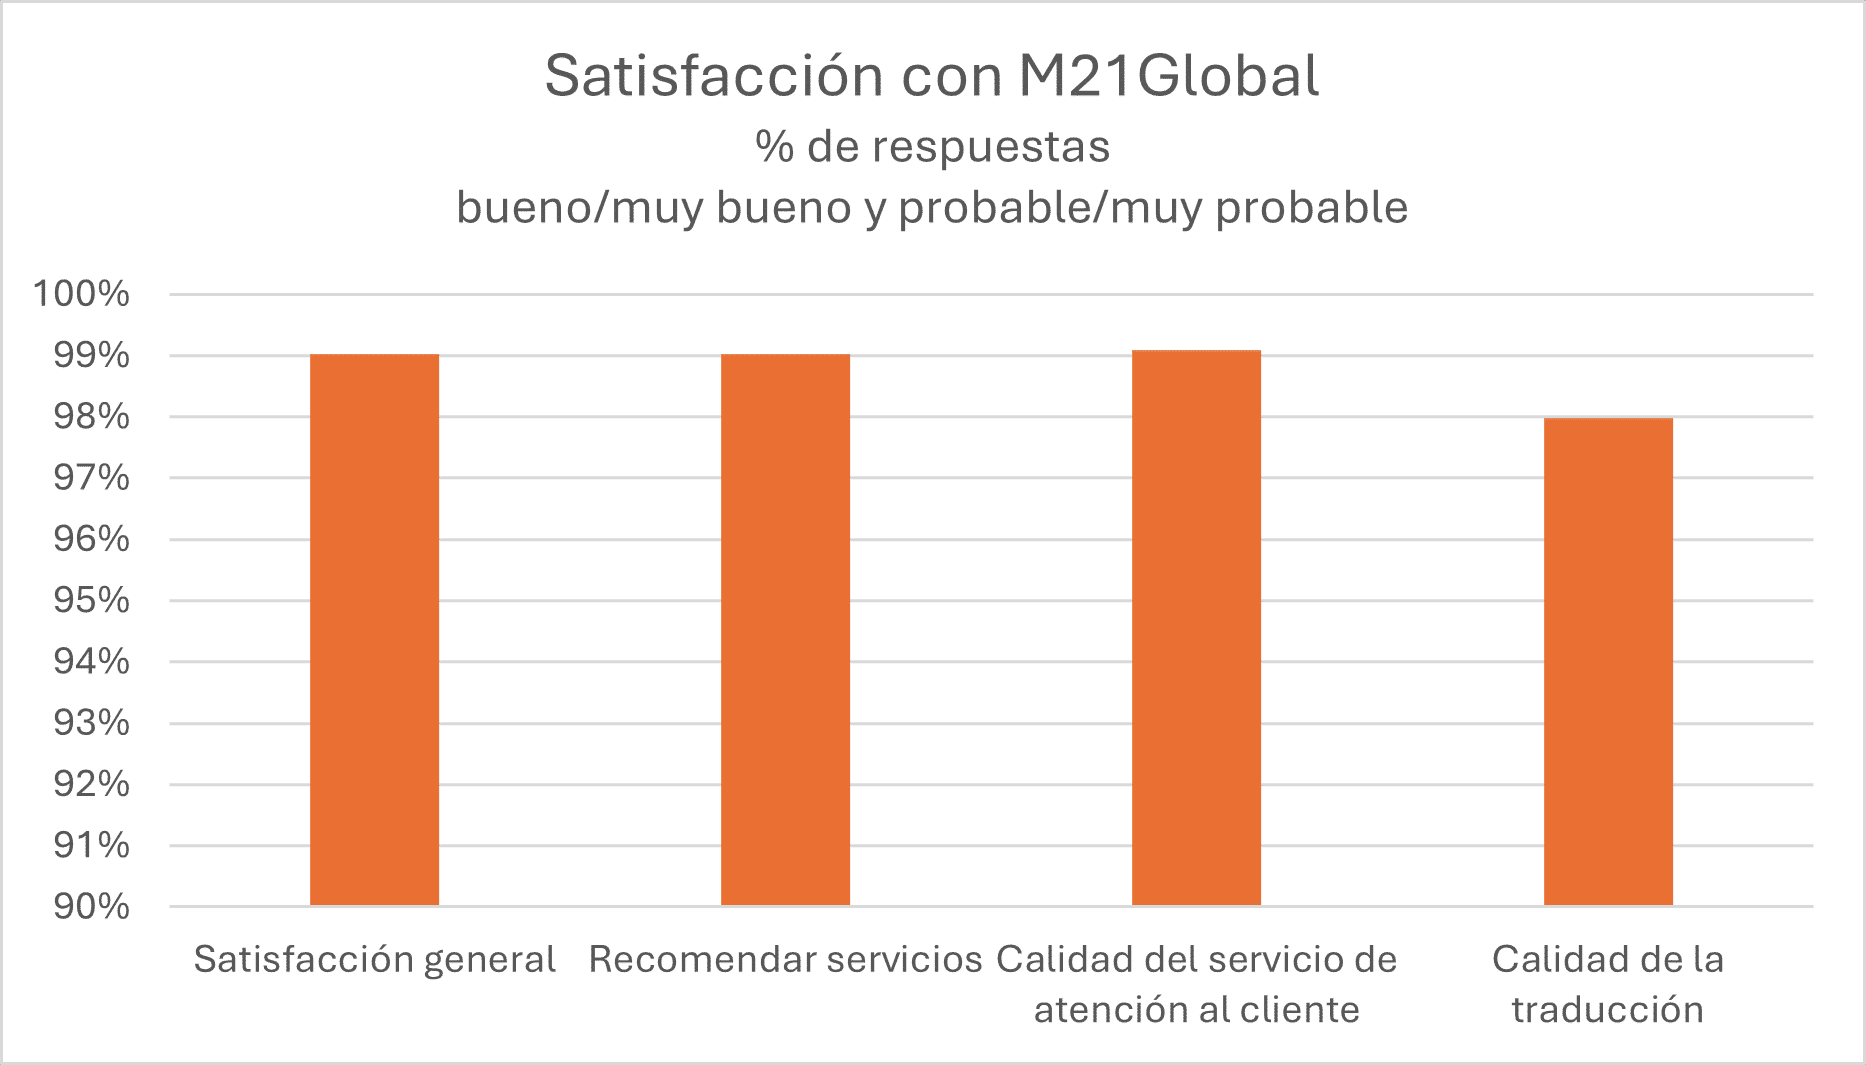 Gráfico que muestra el nivel de satisfacción con M21Global % de respuestas - bueno/muy bueno y probable/muy probable: la elevada satisfacción de nuestros clientes es evidente, ya que el 99 % de las respuestas califica nuestra calidad de servicio como buena o muy buena y la probabilidad de recomendación como probable o muy probable.